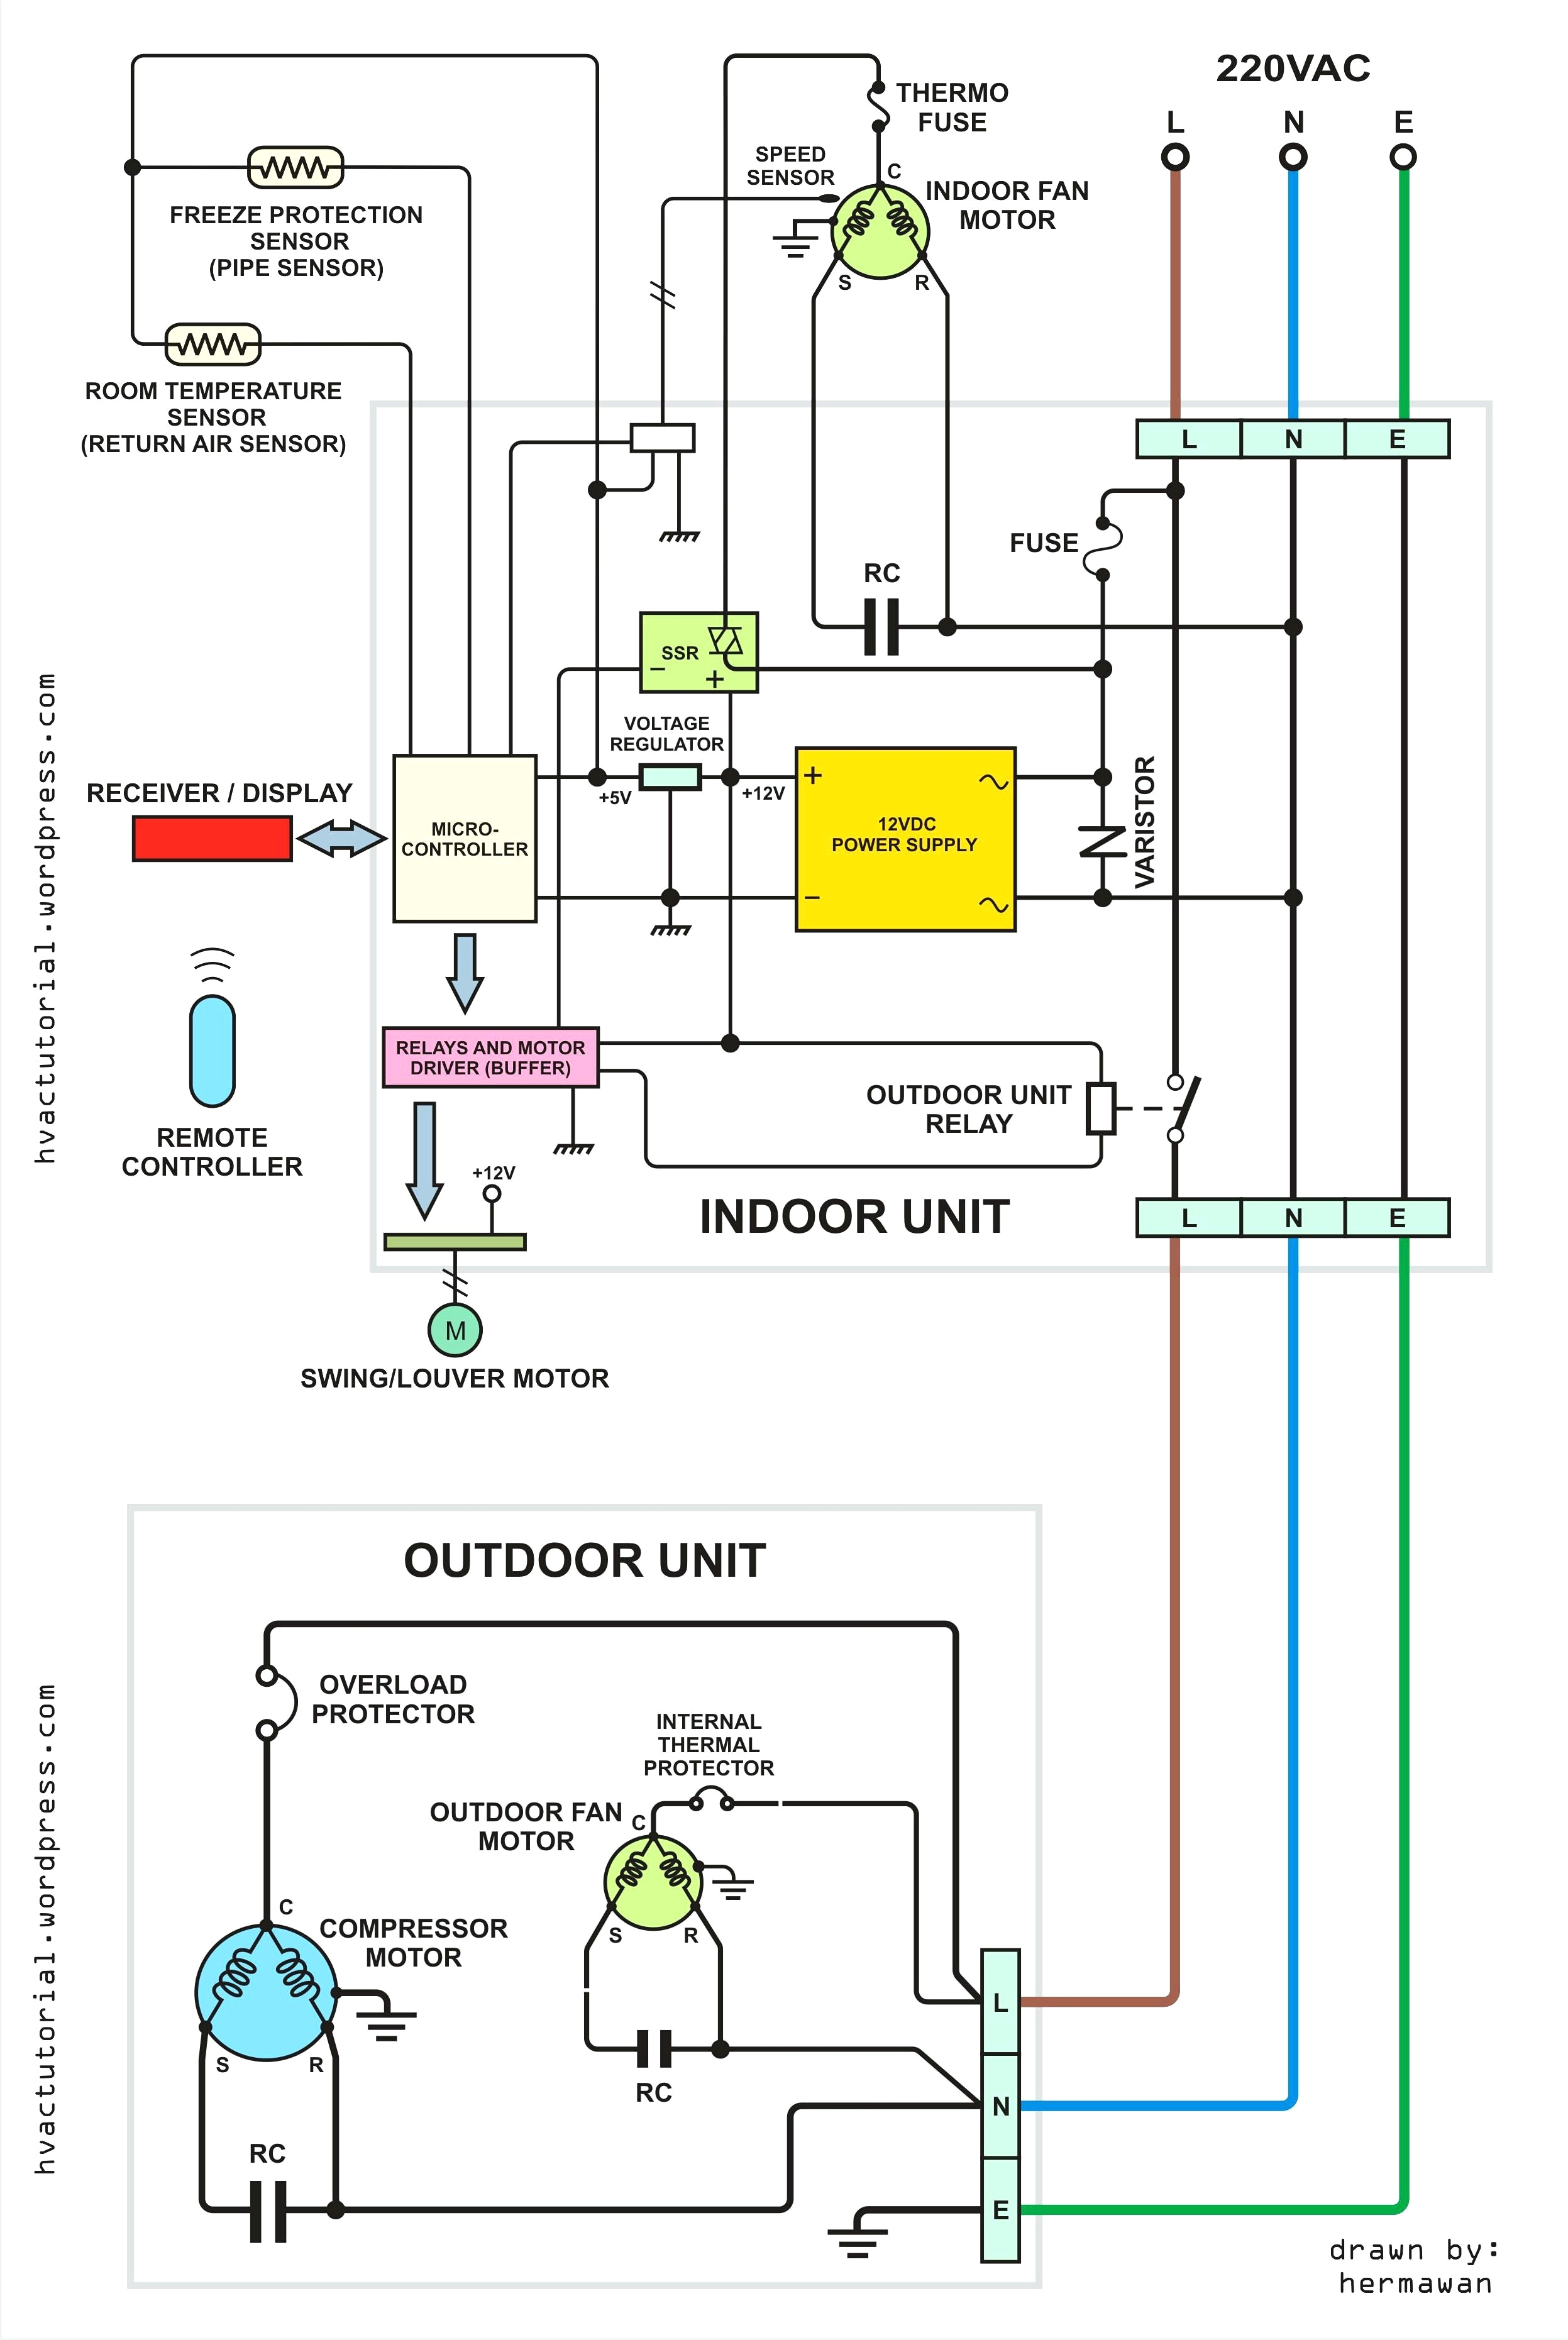 electrical wiring diagrams hvac 205706 wiring diagram user electrical wiring diagrams hvac 205706